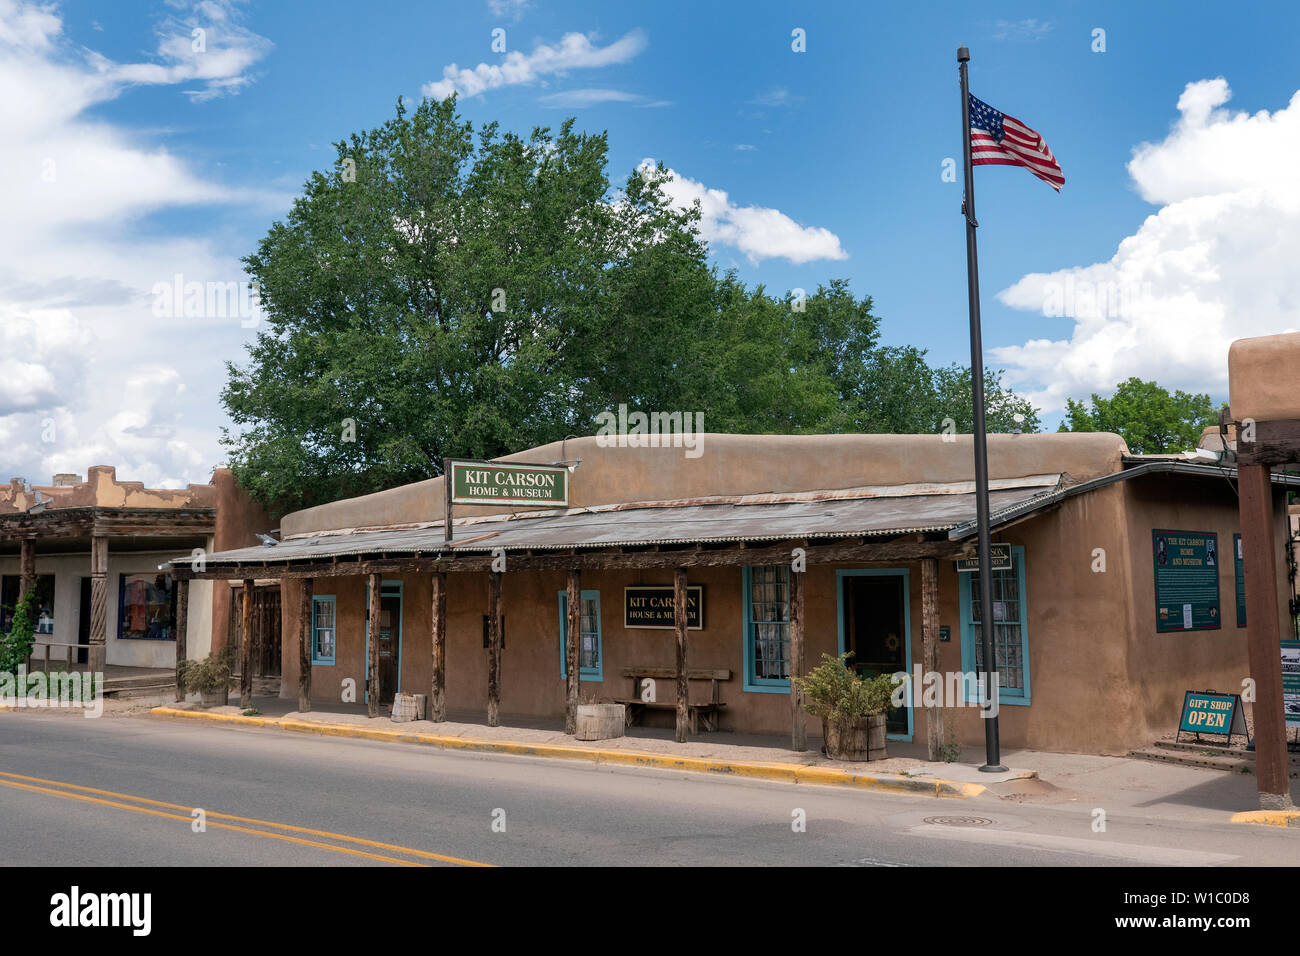 Kit Carson House Taos New Mexico USa Stock Photo